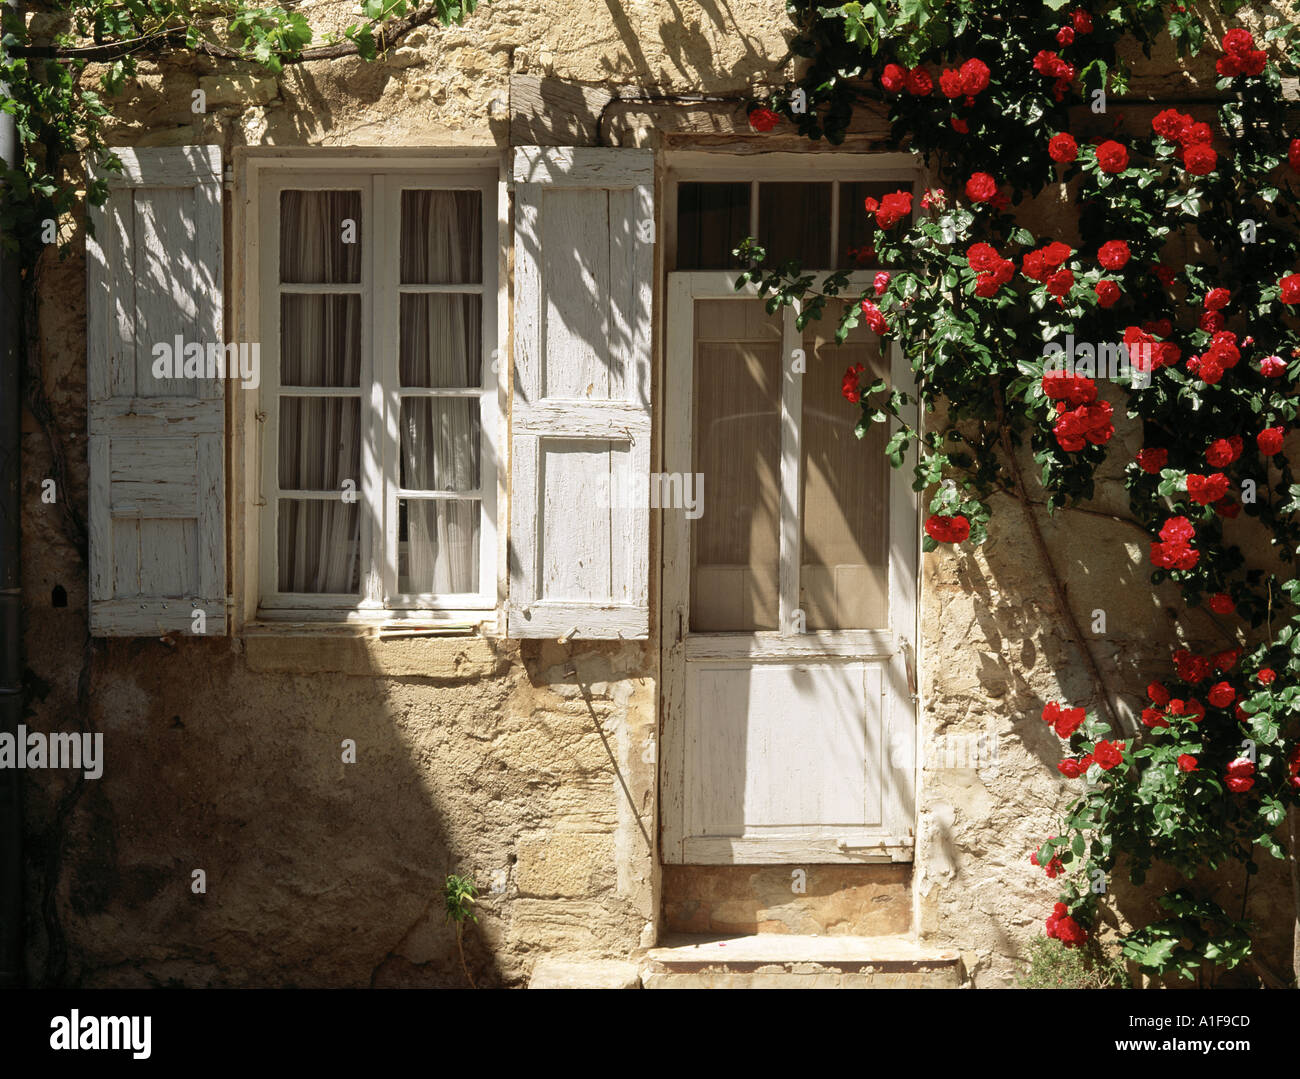 Belle rose intorno a una porta di charme a Vaison la Romaine in Provenza. Immagine rustica tipica della Francia vecchio stile. Foto Stock